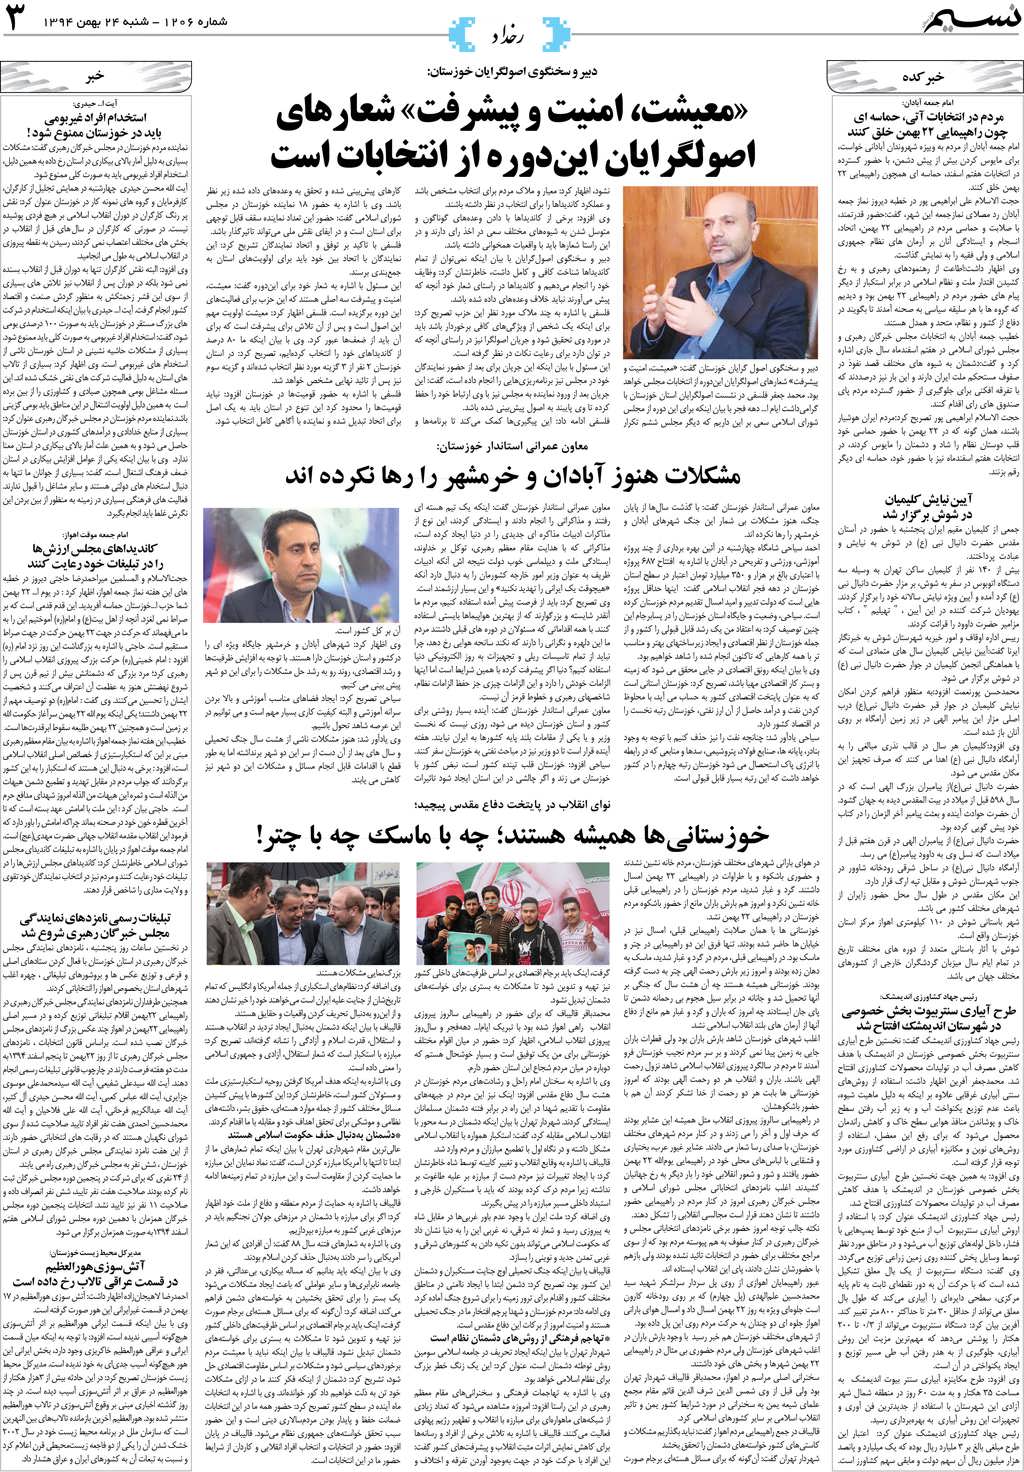 صفحه رخداد روزنامه نسیم شماره 1206